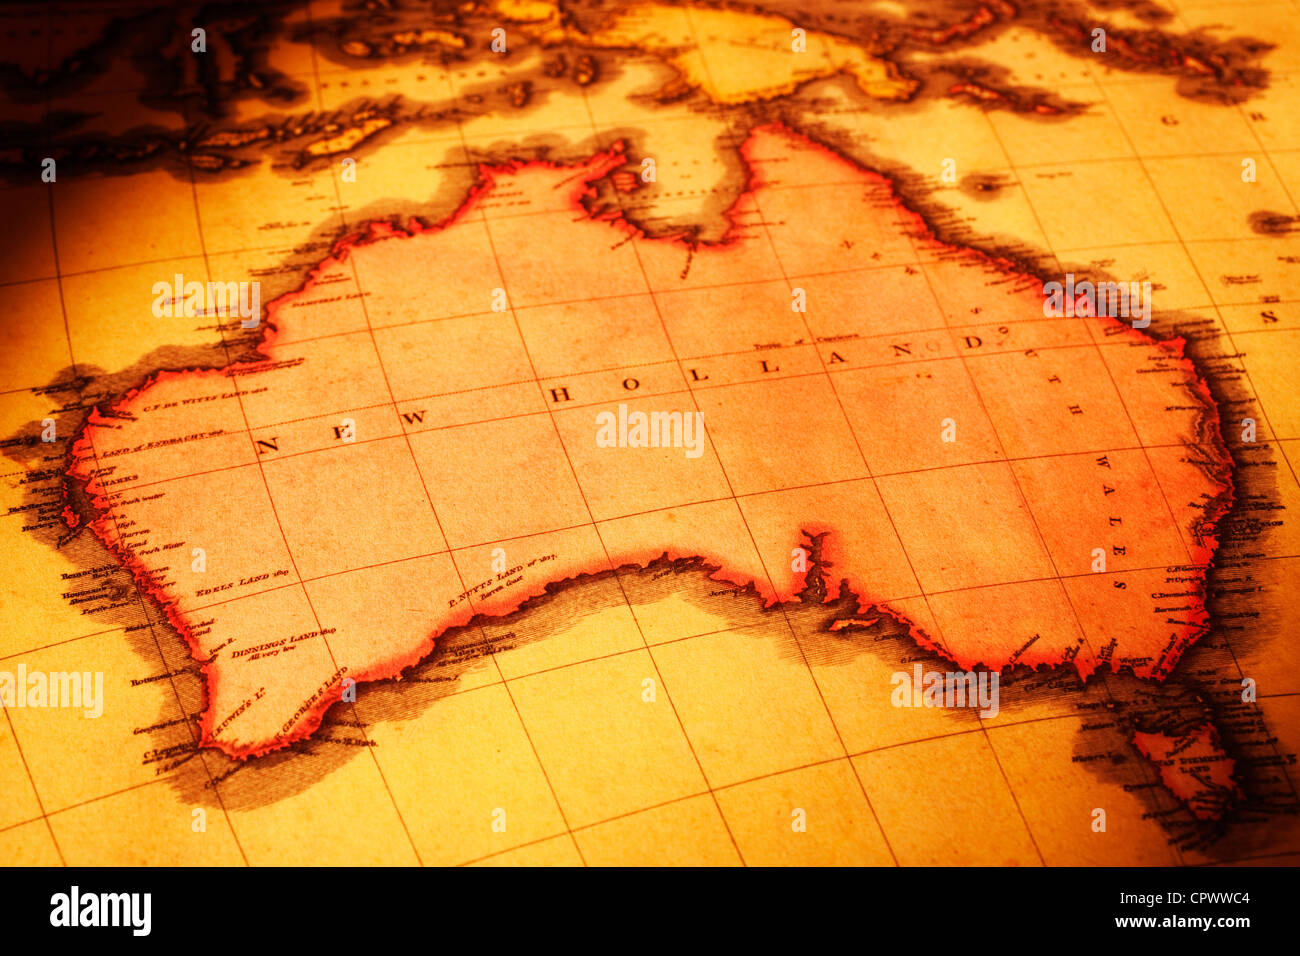 Antica mappa di Australia, denominato New Holland. Mappa è dal 1818 ed è al di fuori del diritto d'autore. Foto Stock